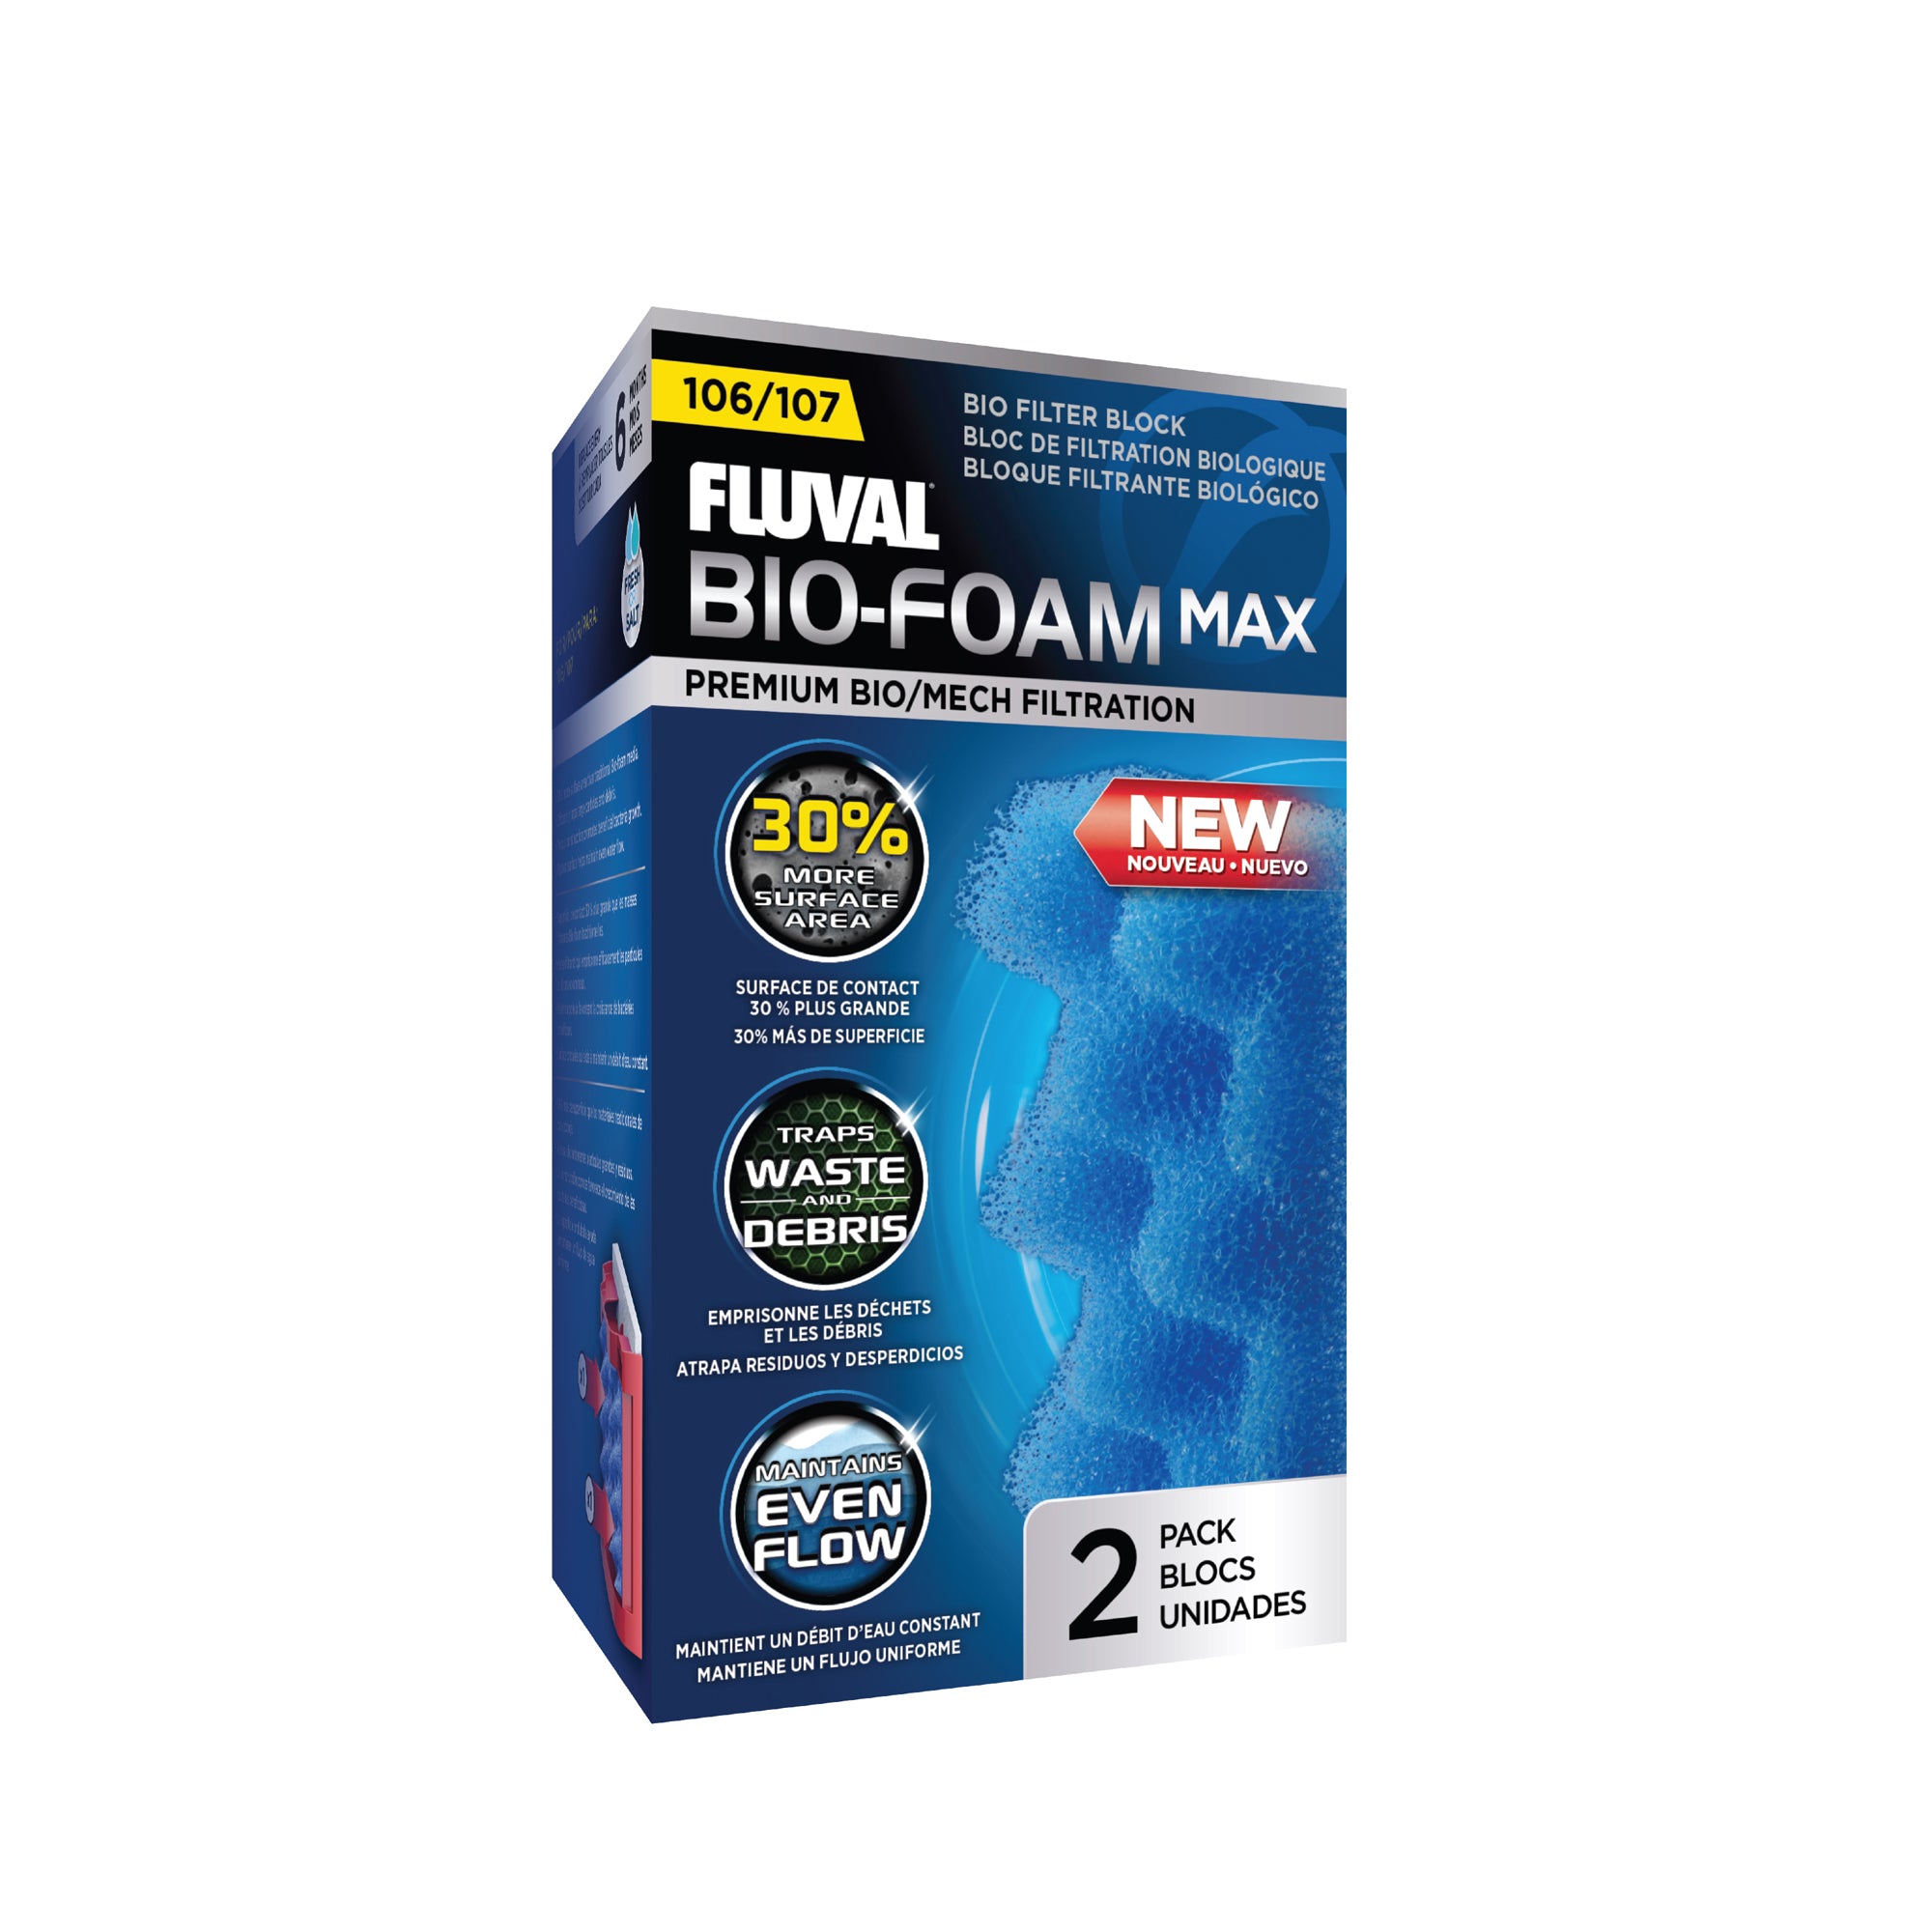 Fluval 106/107 Bio-Foam Max - 2 pack